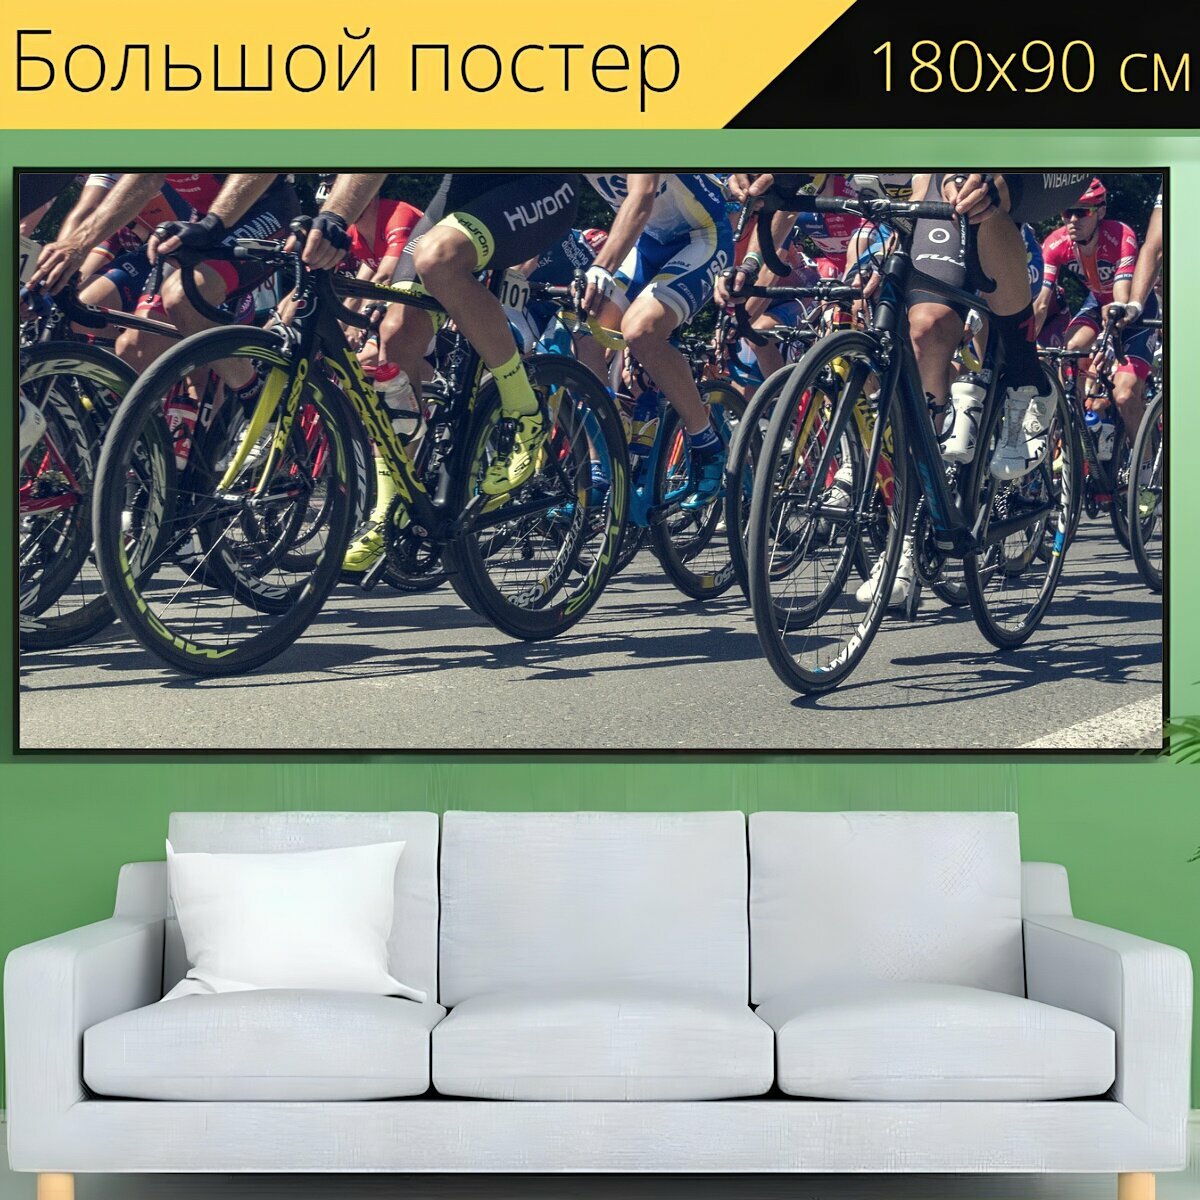 Большой постер "Кататься на велосипеде, гонка, тур" 180 x 90 см. для интерьера